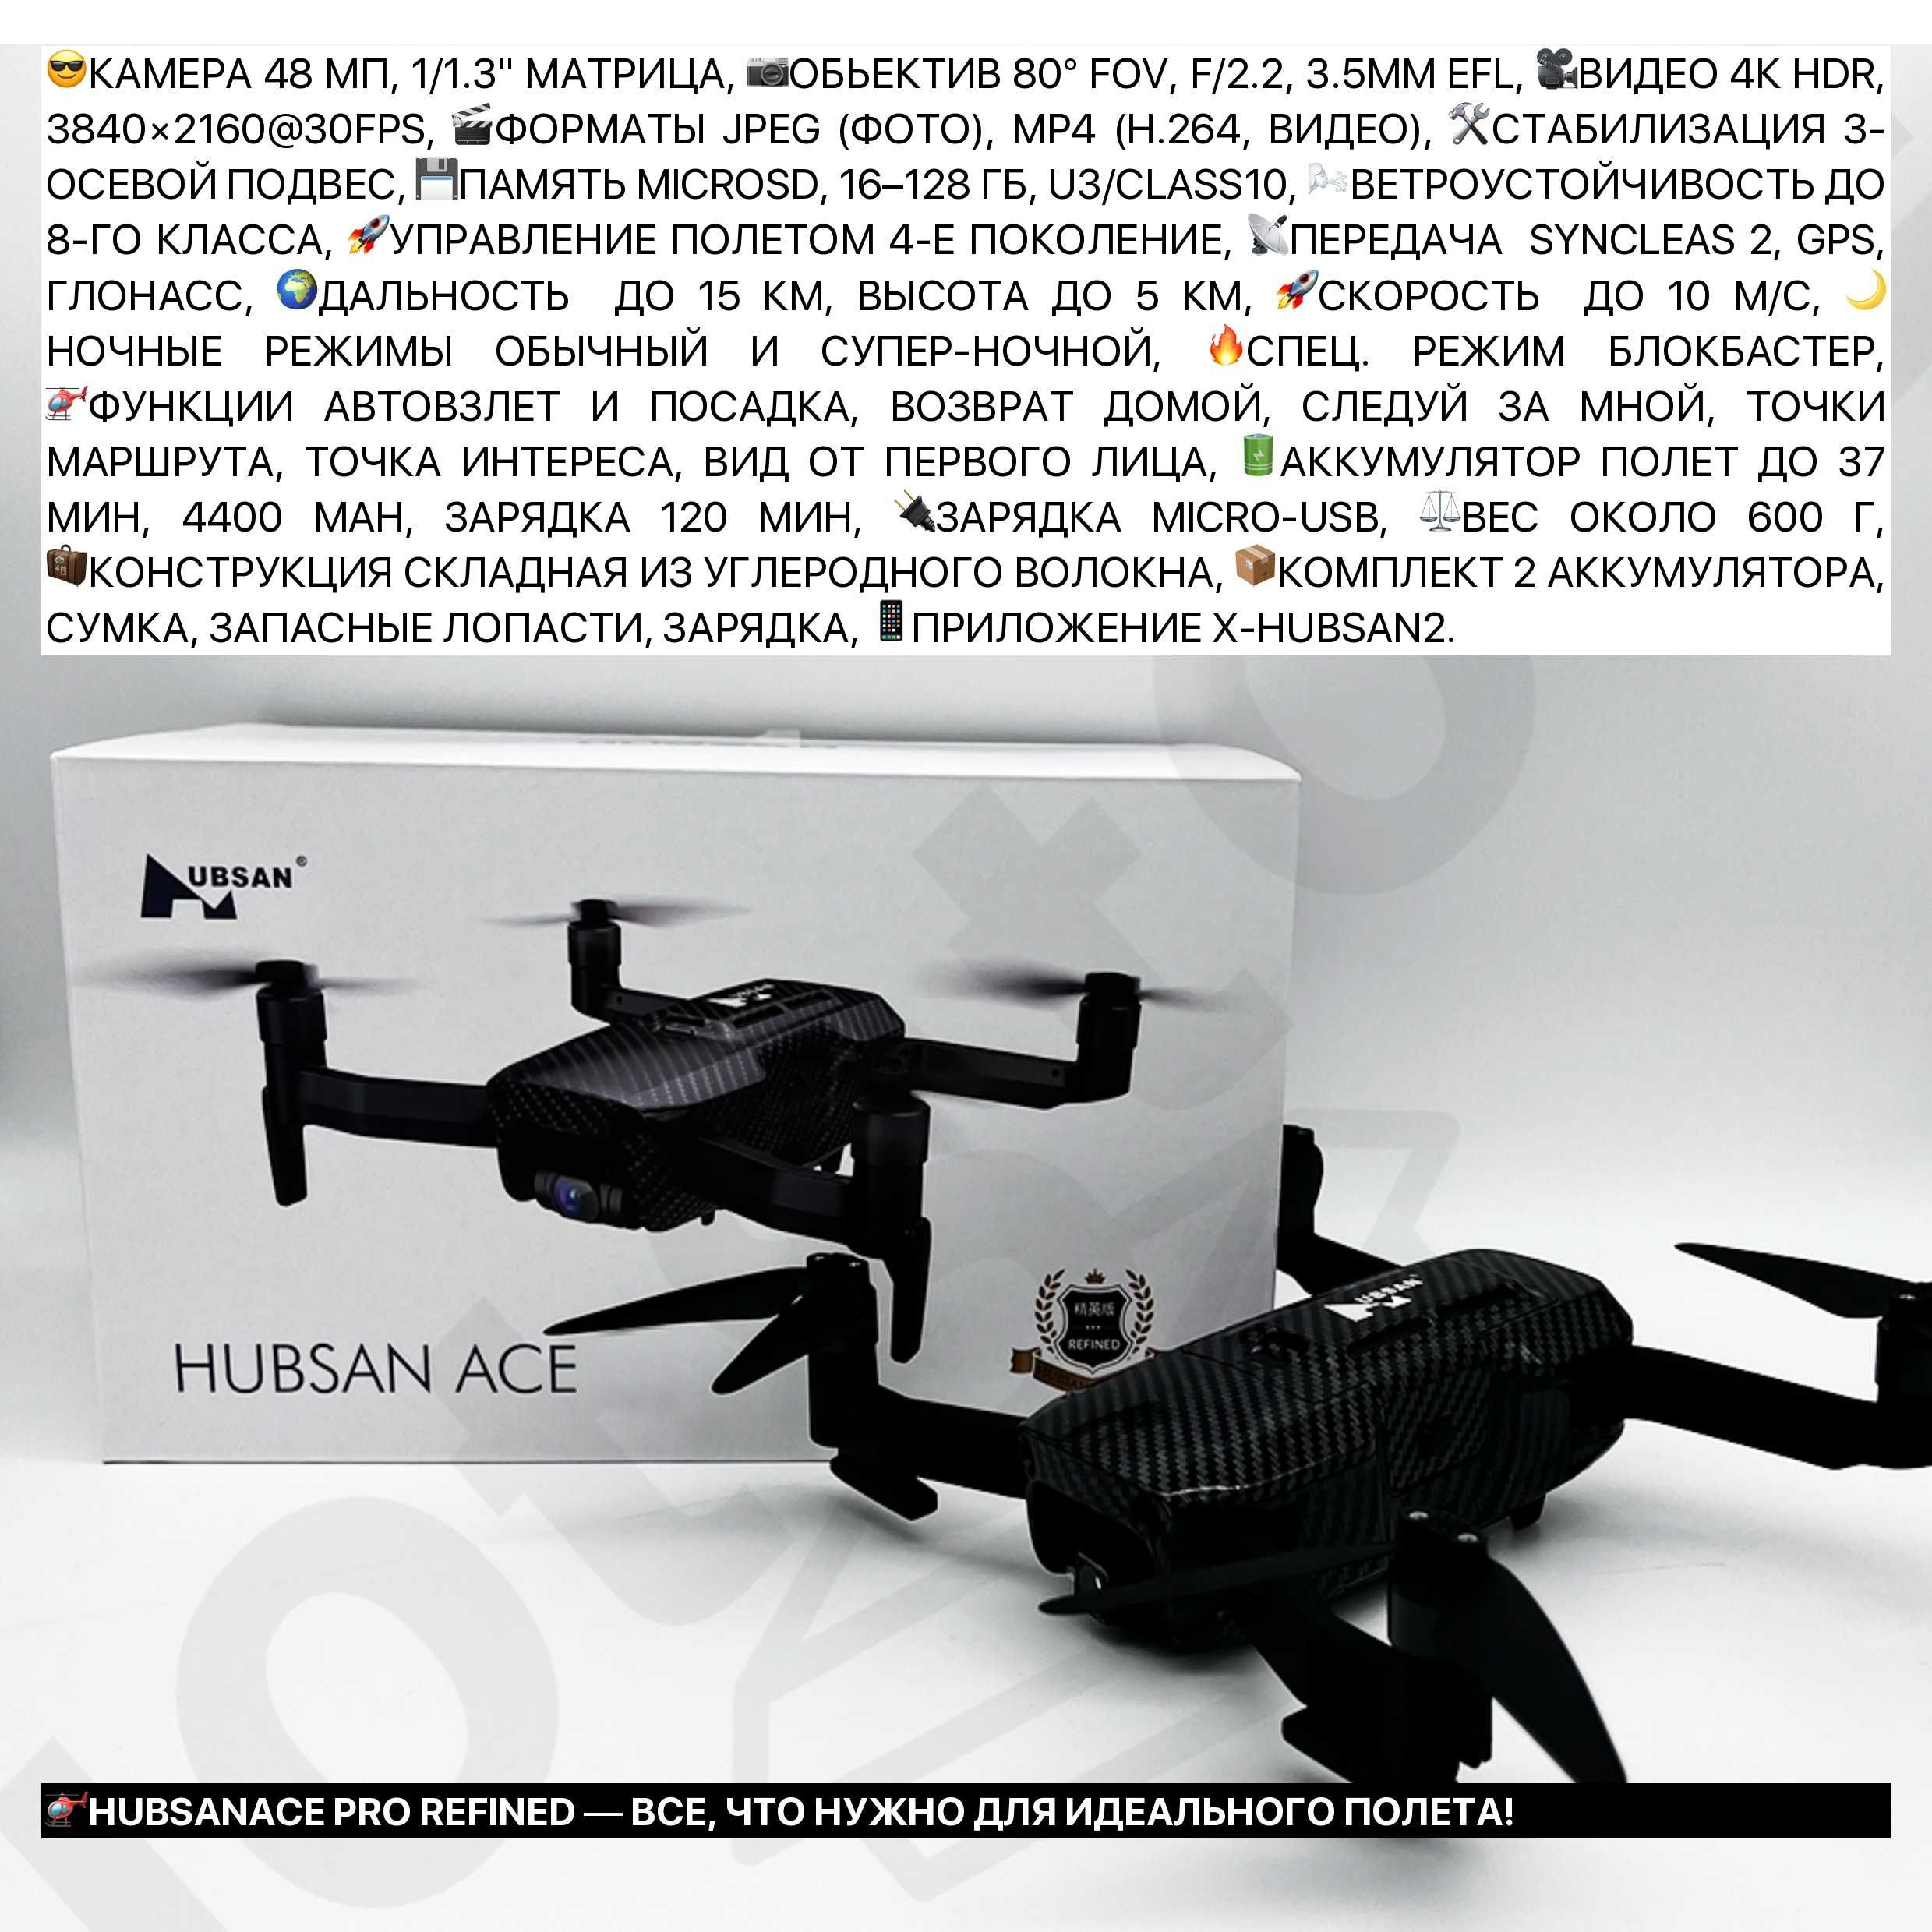 ШЫМКЕНТ ДЕШЕВЫЕ 15KM оригинальные профессиональные квадрокоптеры дроны